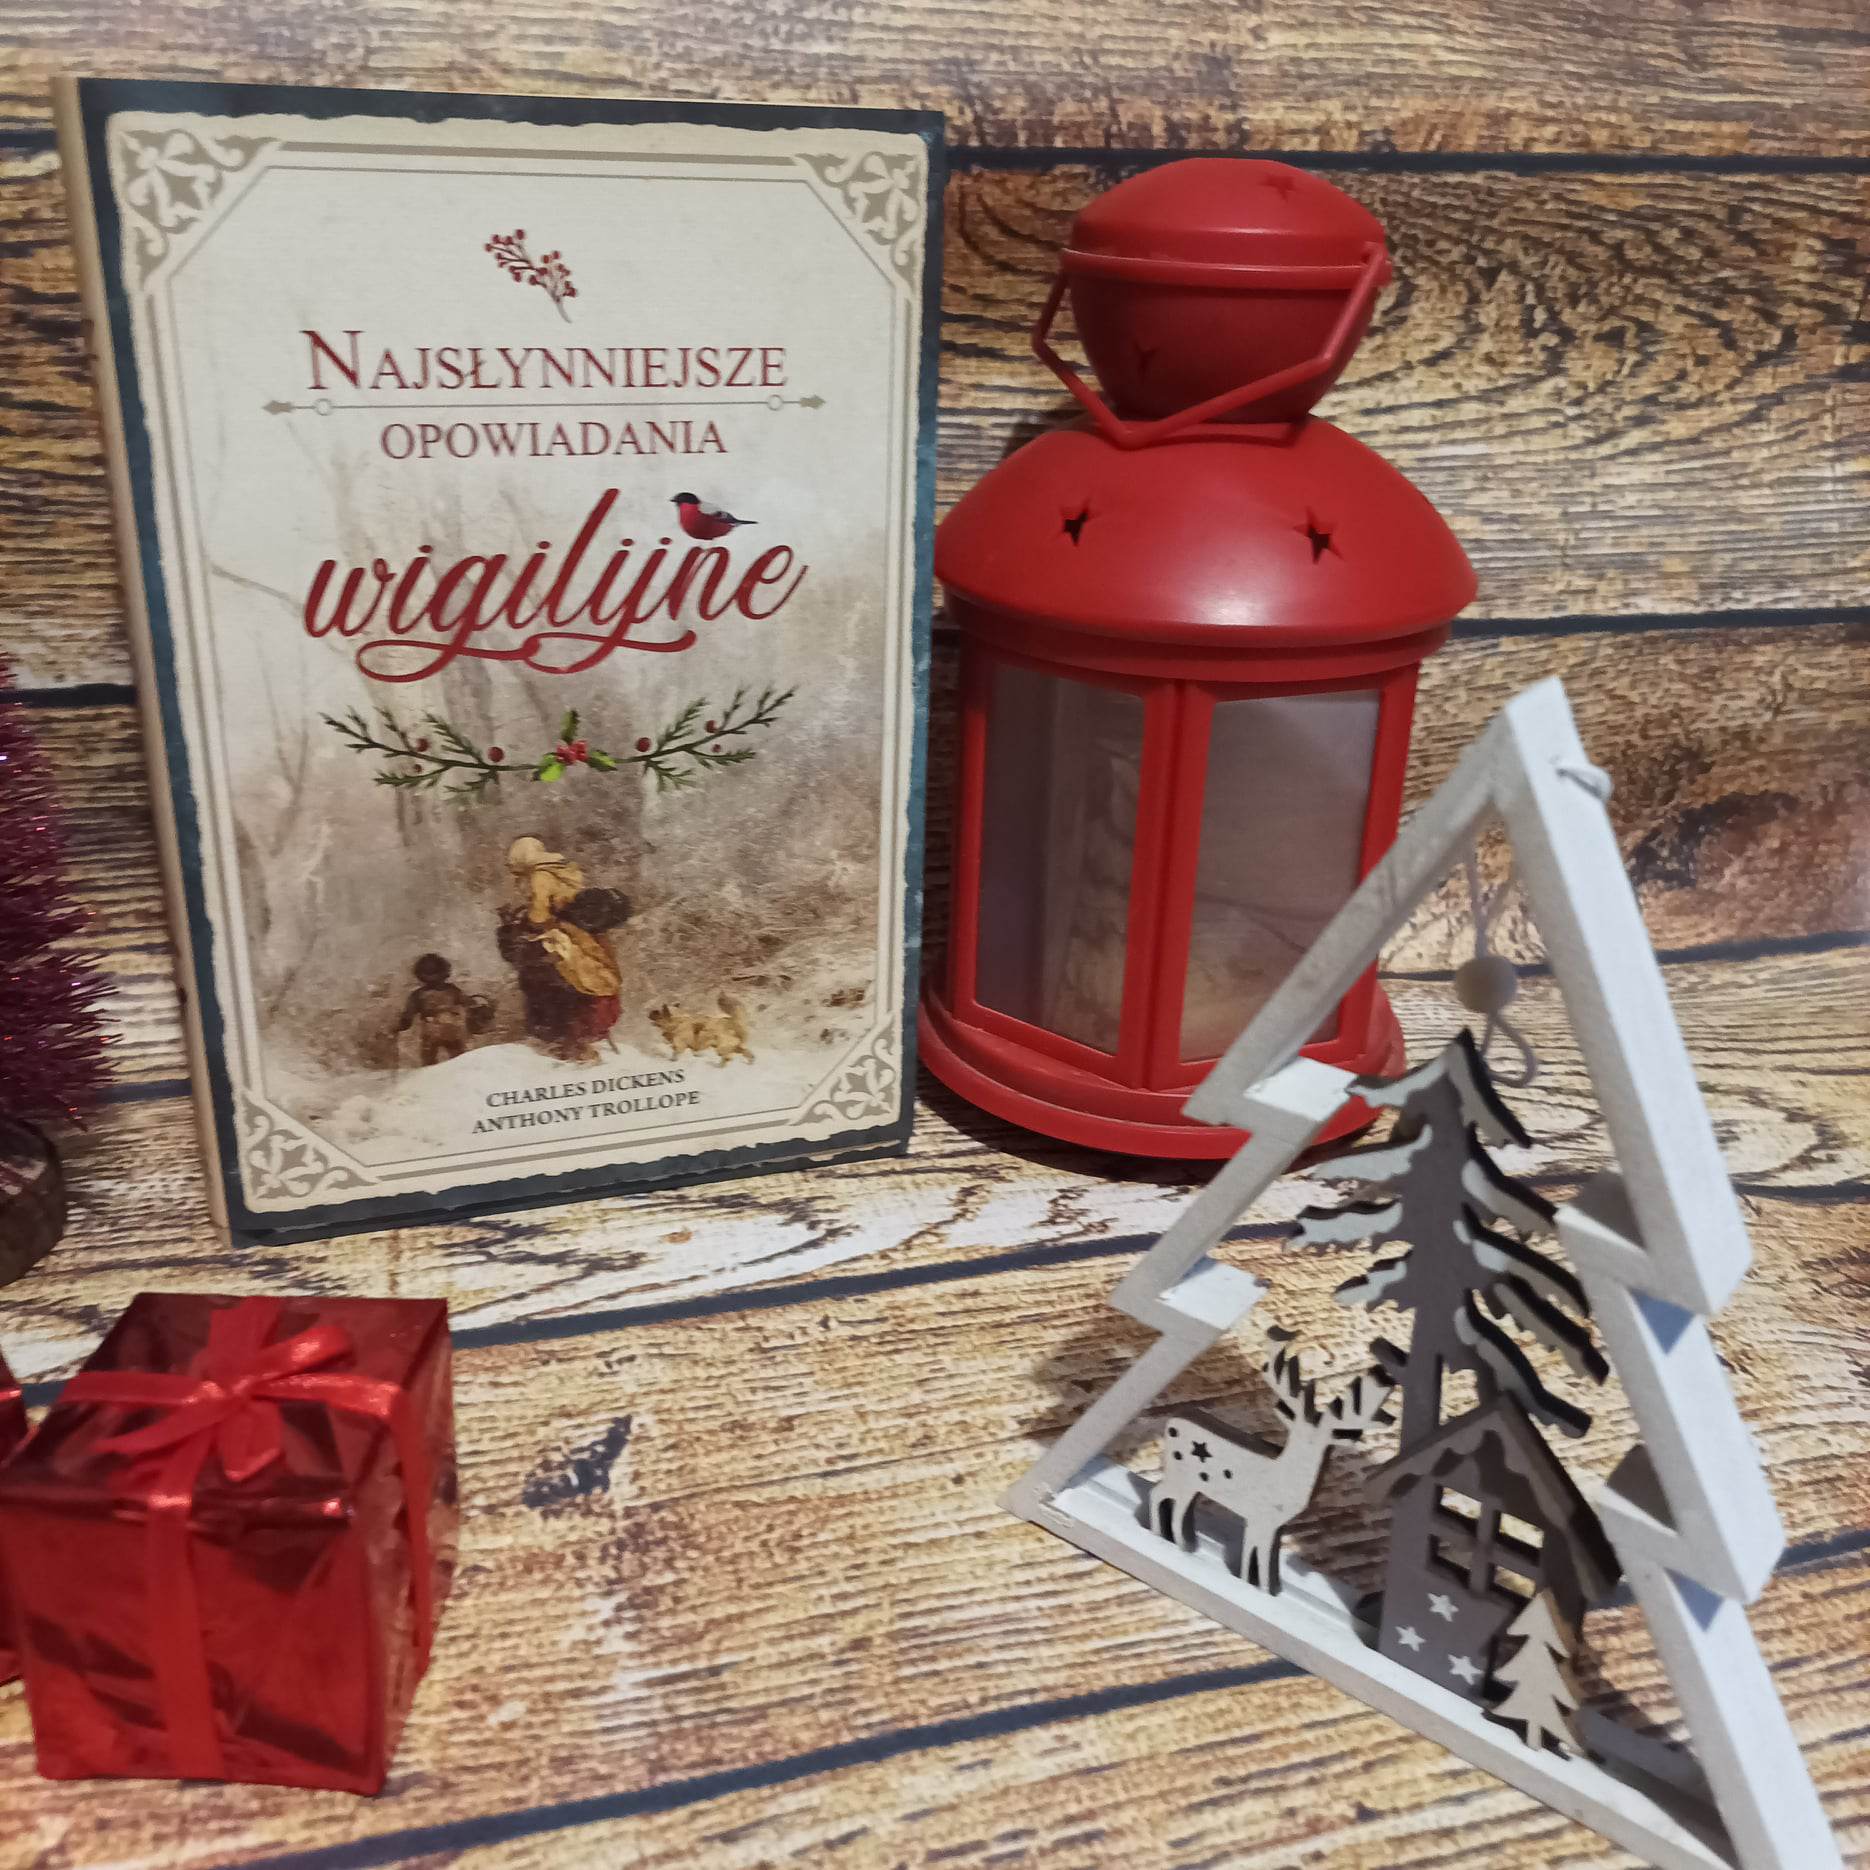 You are currently viewing Najsłynniejsze opowiadania wigilijne [ChristmasBooks]